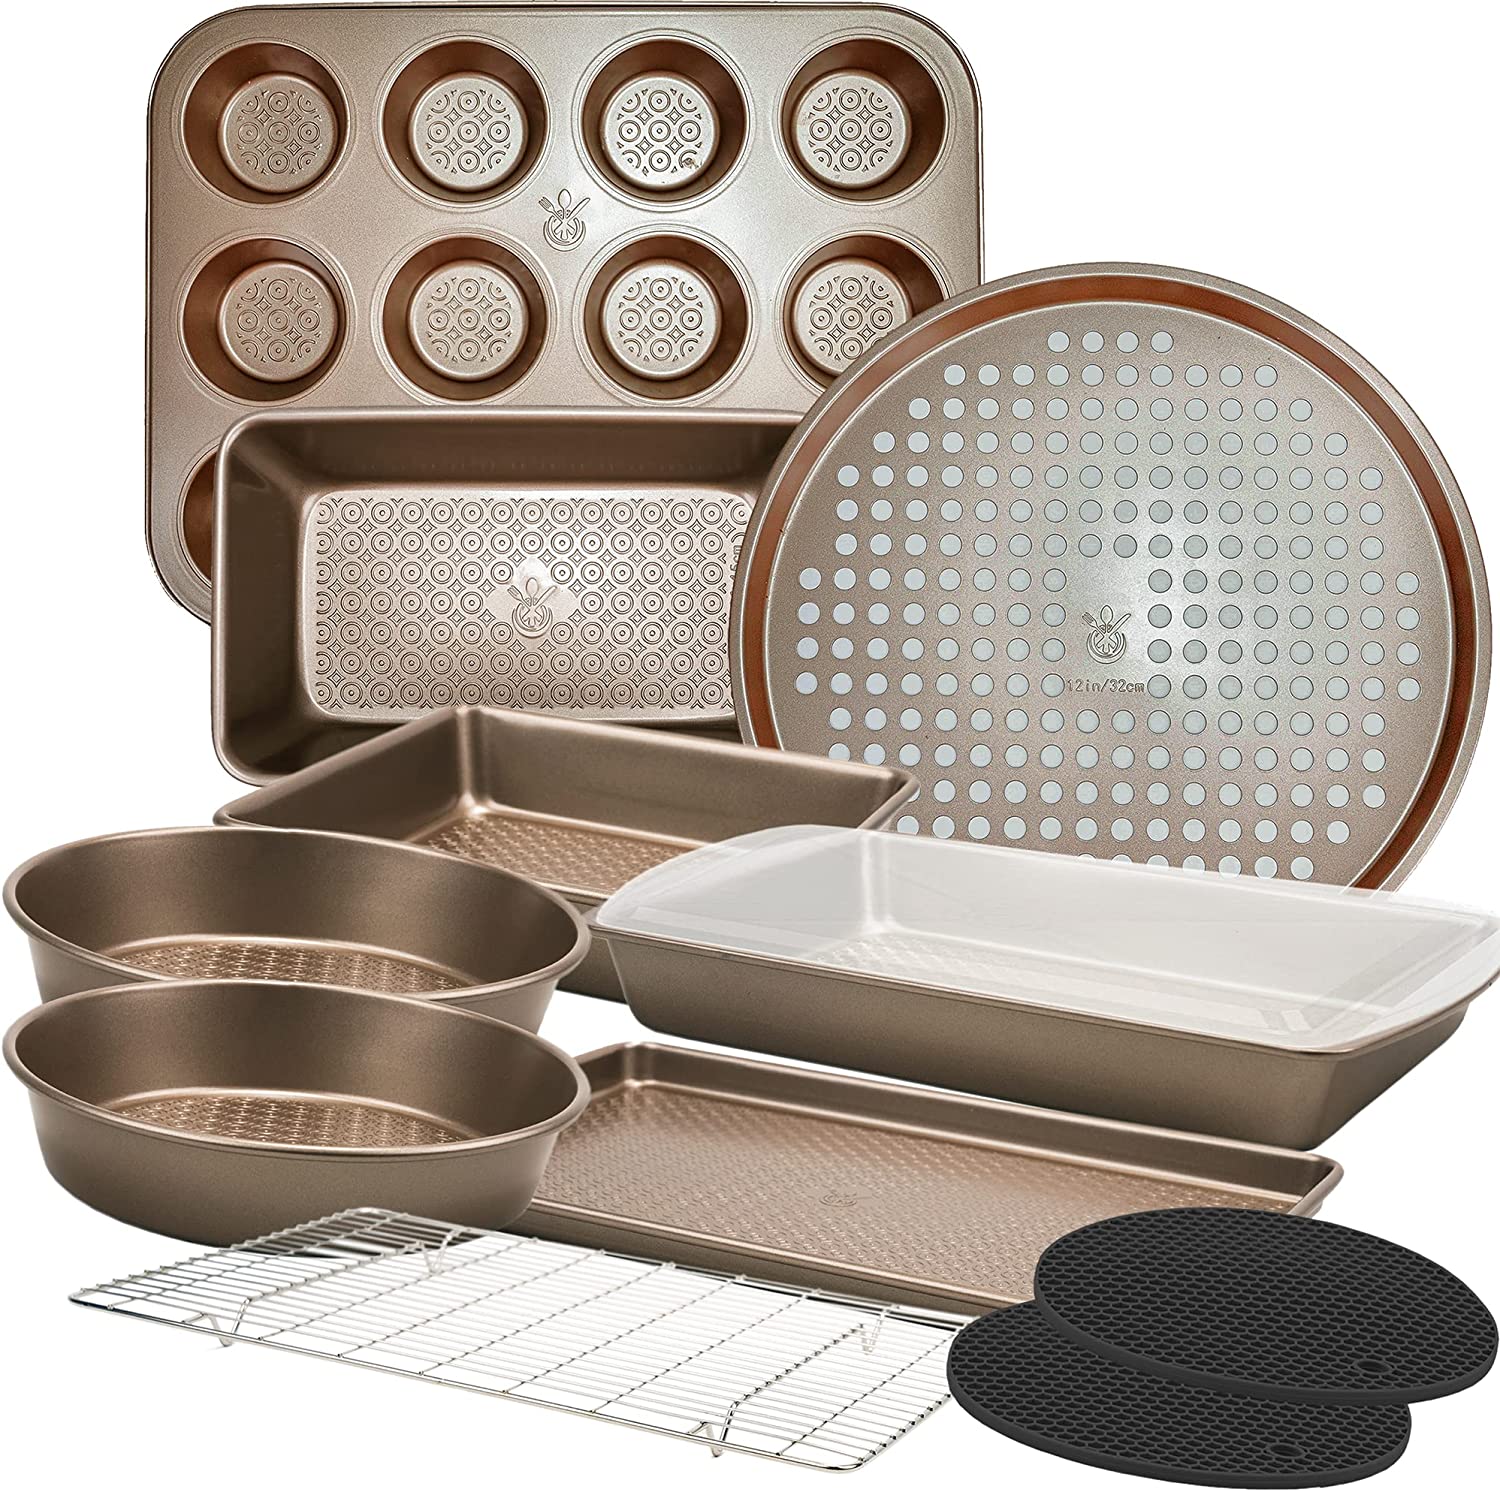 Nonstick Baking Pans Set - Bakeware Set Baking Sheets For Oven, 7 PCS  Stackable Baking Set w/Cookie Sheet, Cake Pan, Loaf Pan, Muffin Pan,  Roaster